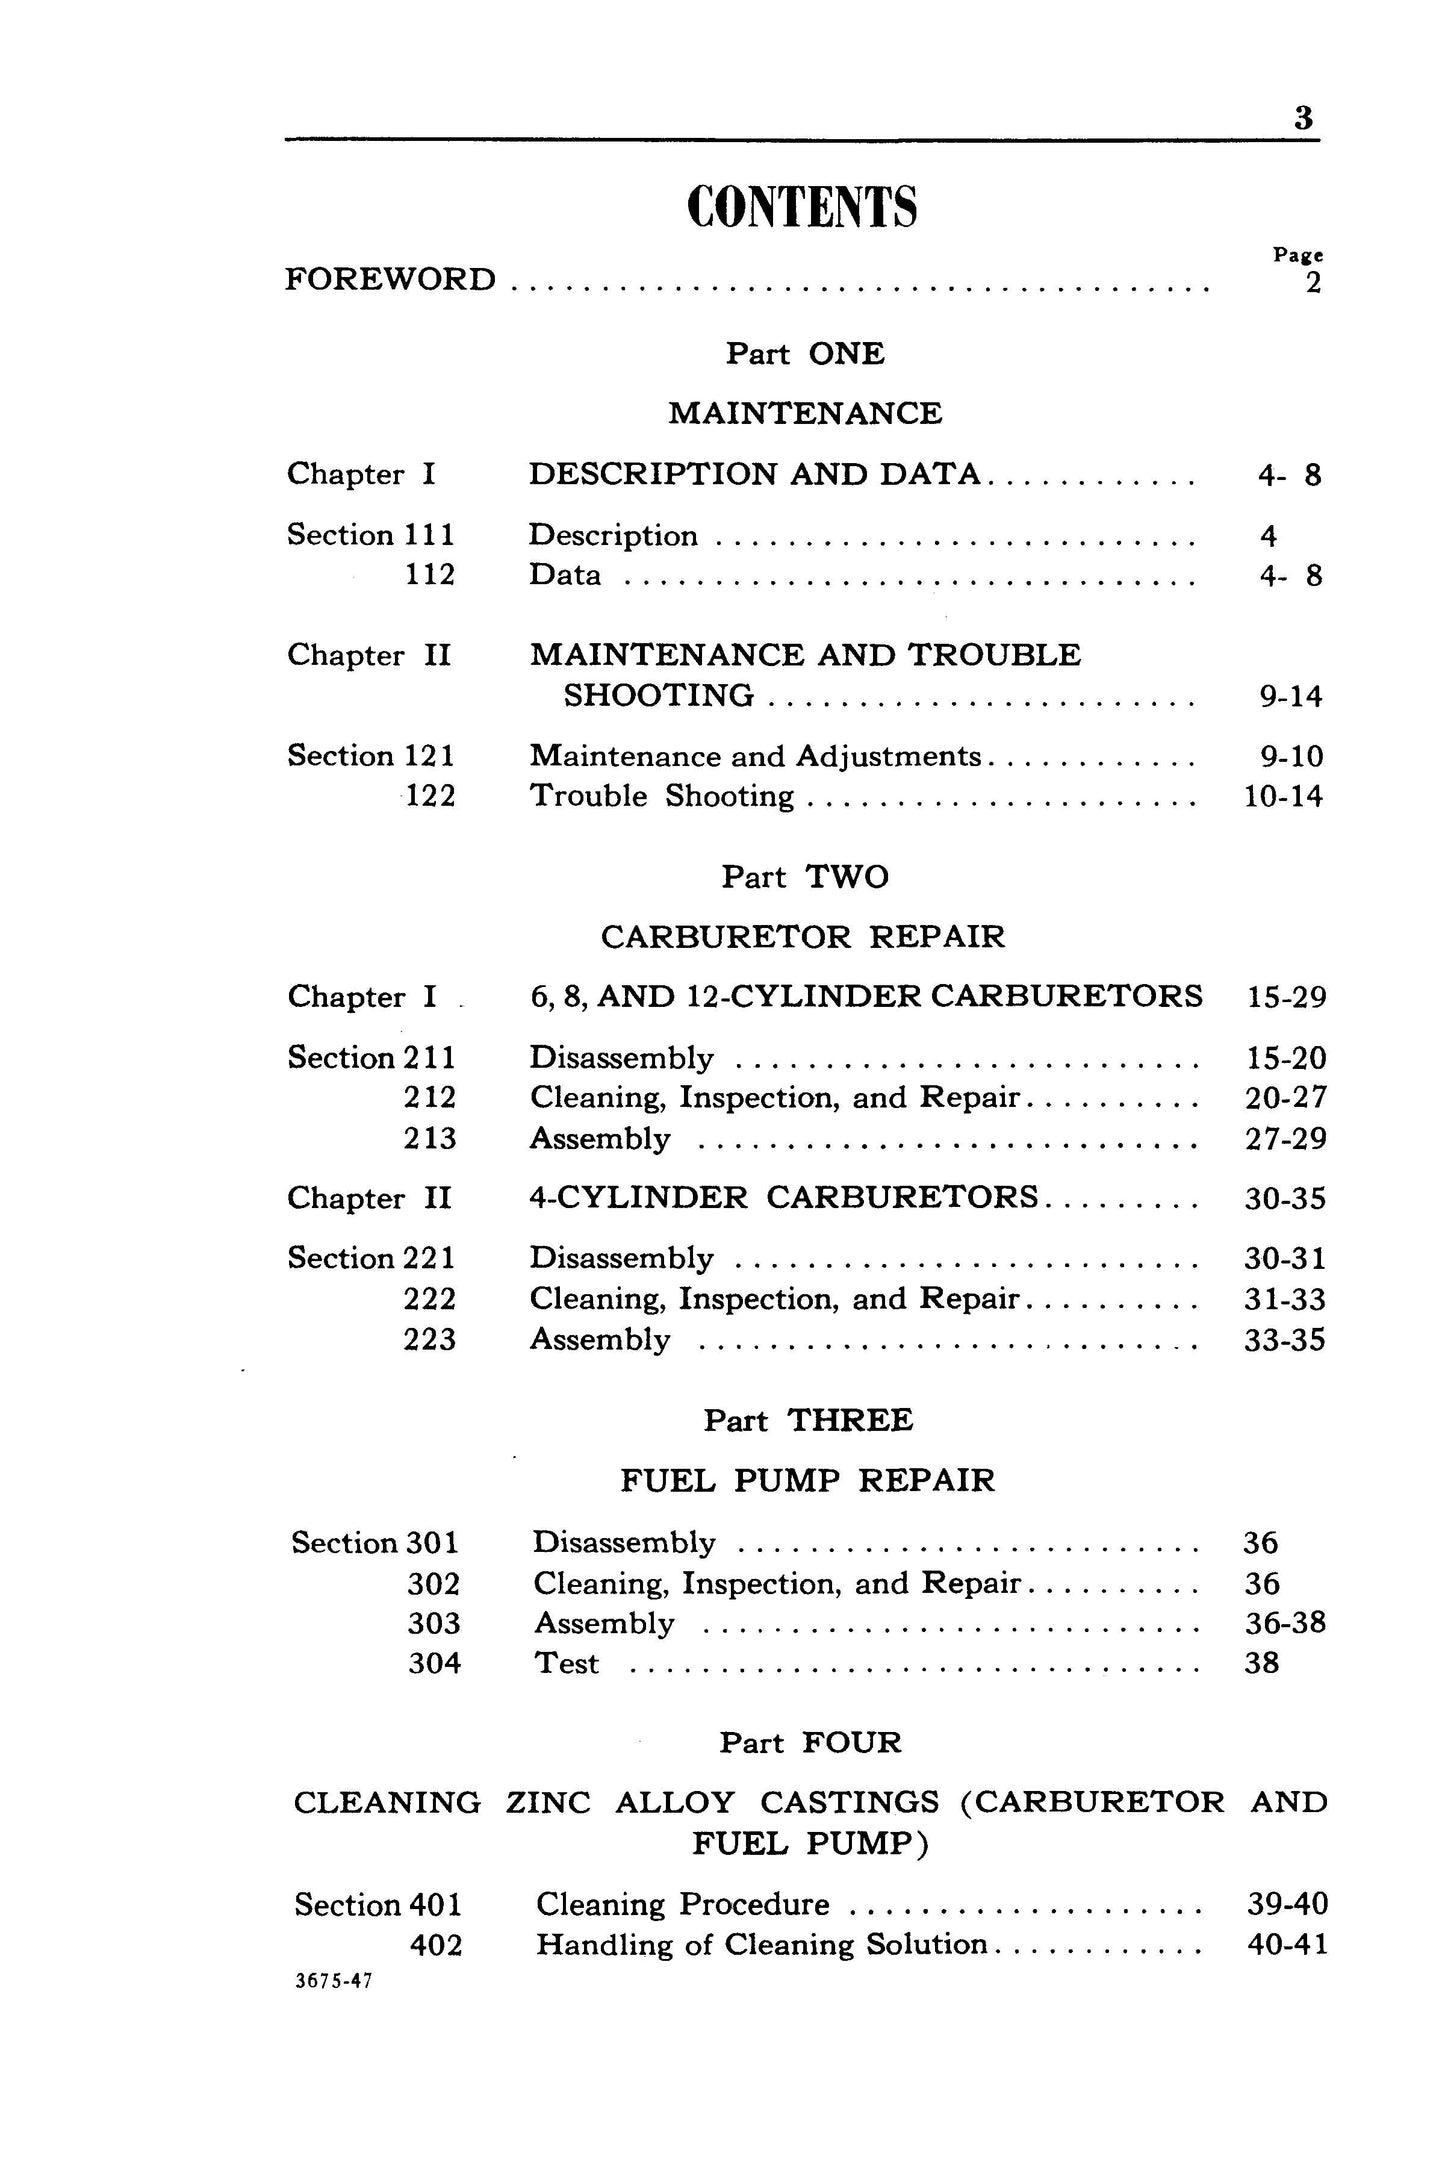 1938-1948 Ford, Lincoln, Mercury Service Bulletins Repair Manual